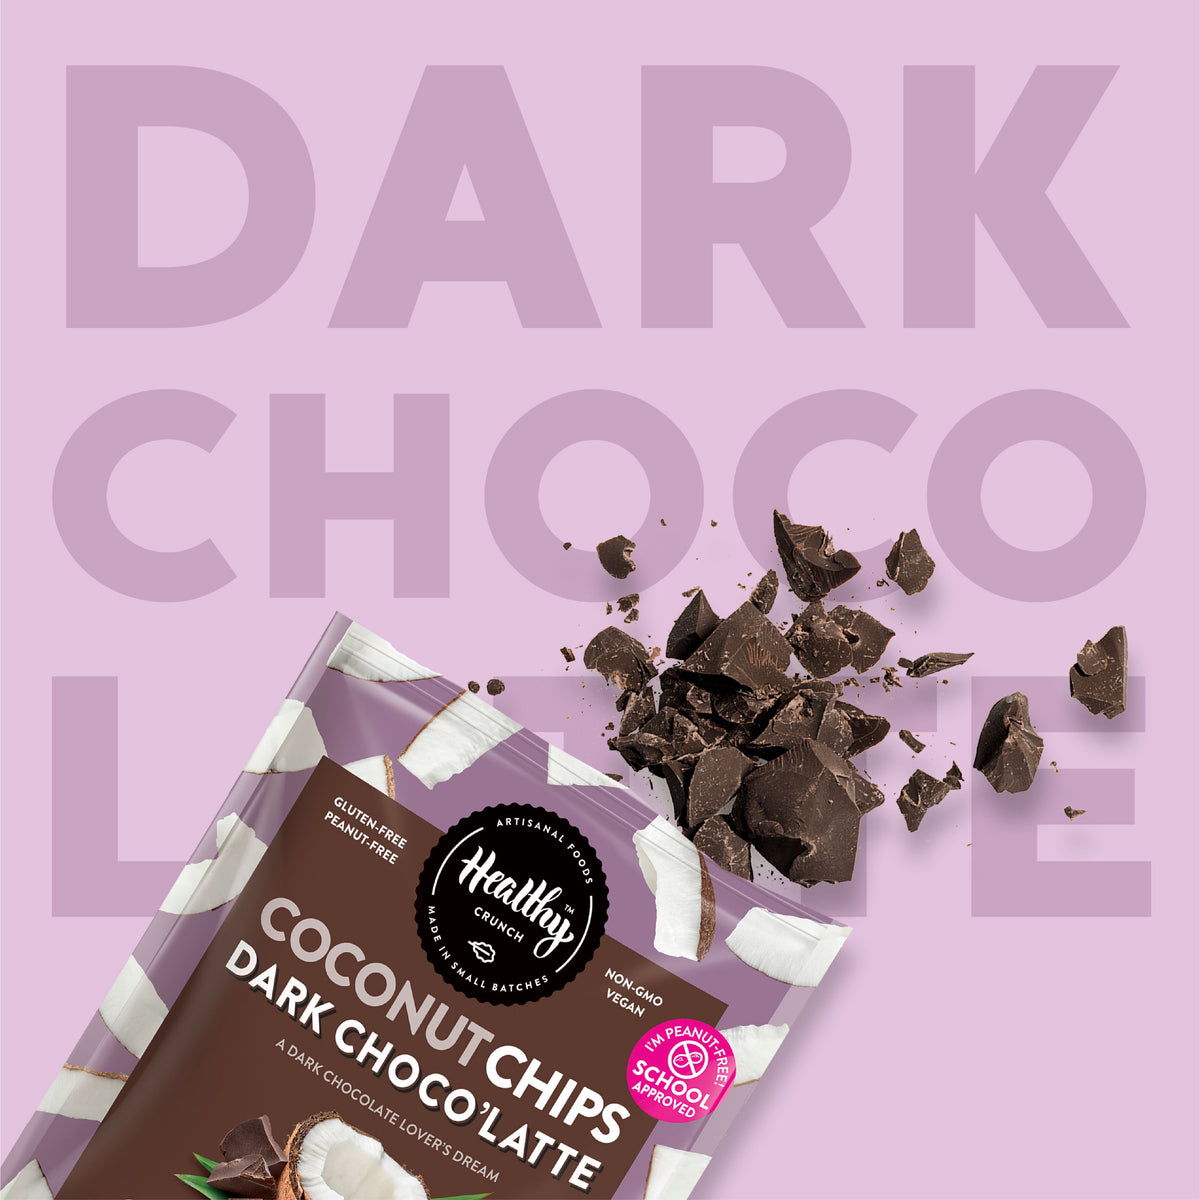 Dark Choco&#39;Latte Coconut Chips